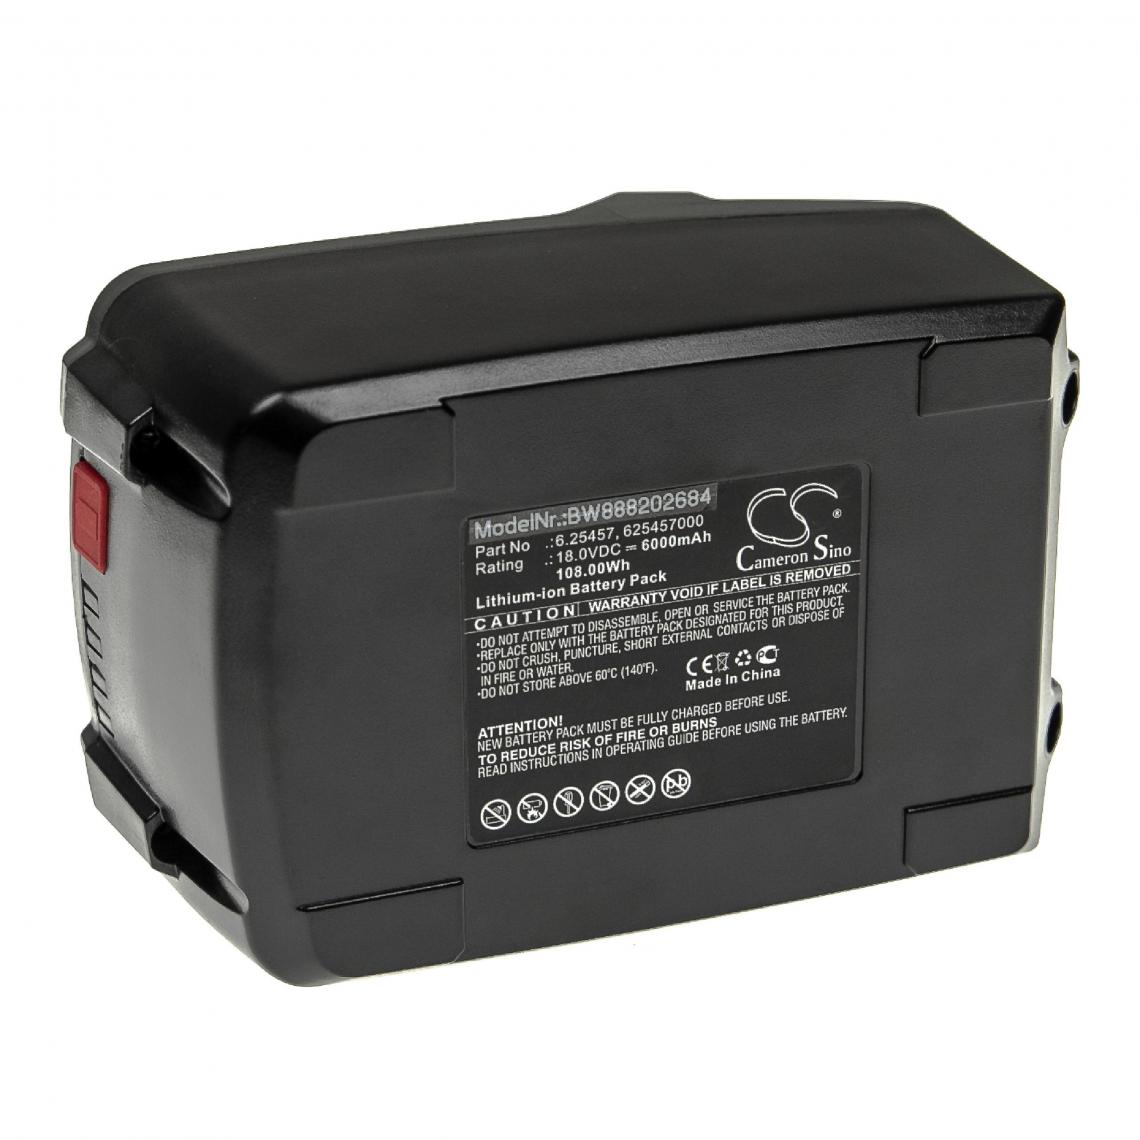 Vhbw - vhbw Batterie compatible avec Metabo BS 18 LTX BL I, BS 18 LTX BL I 602350500 outil électrique (6000mAh Li-ion 18 V) - Autre appareil de mesure